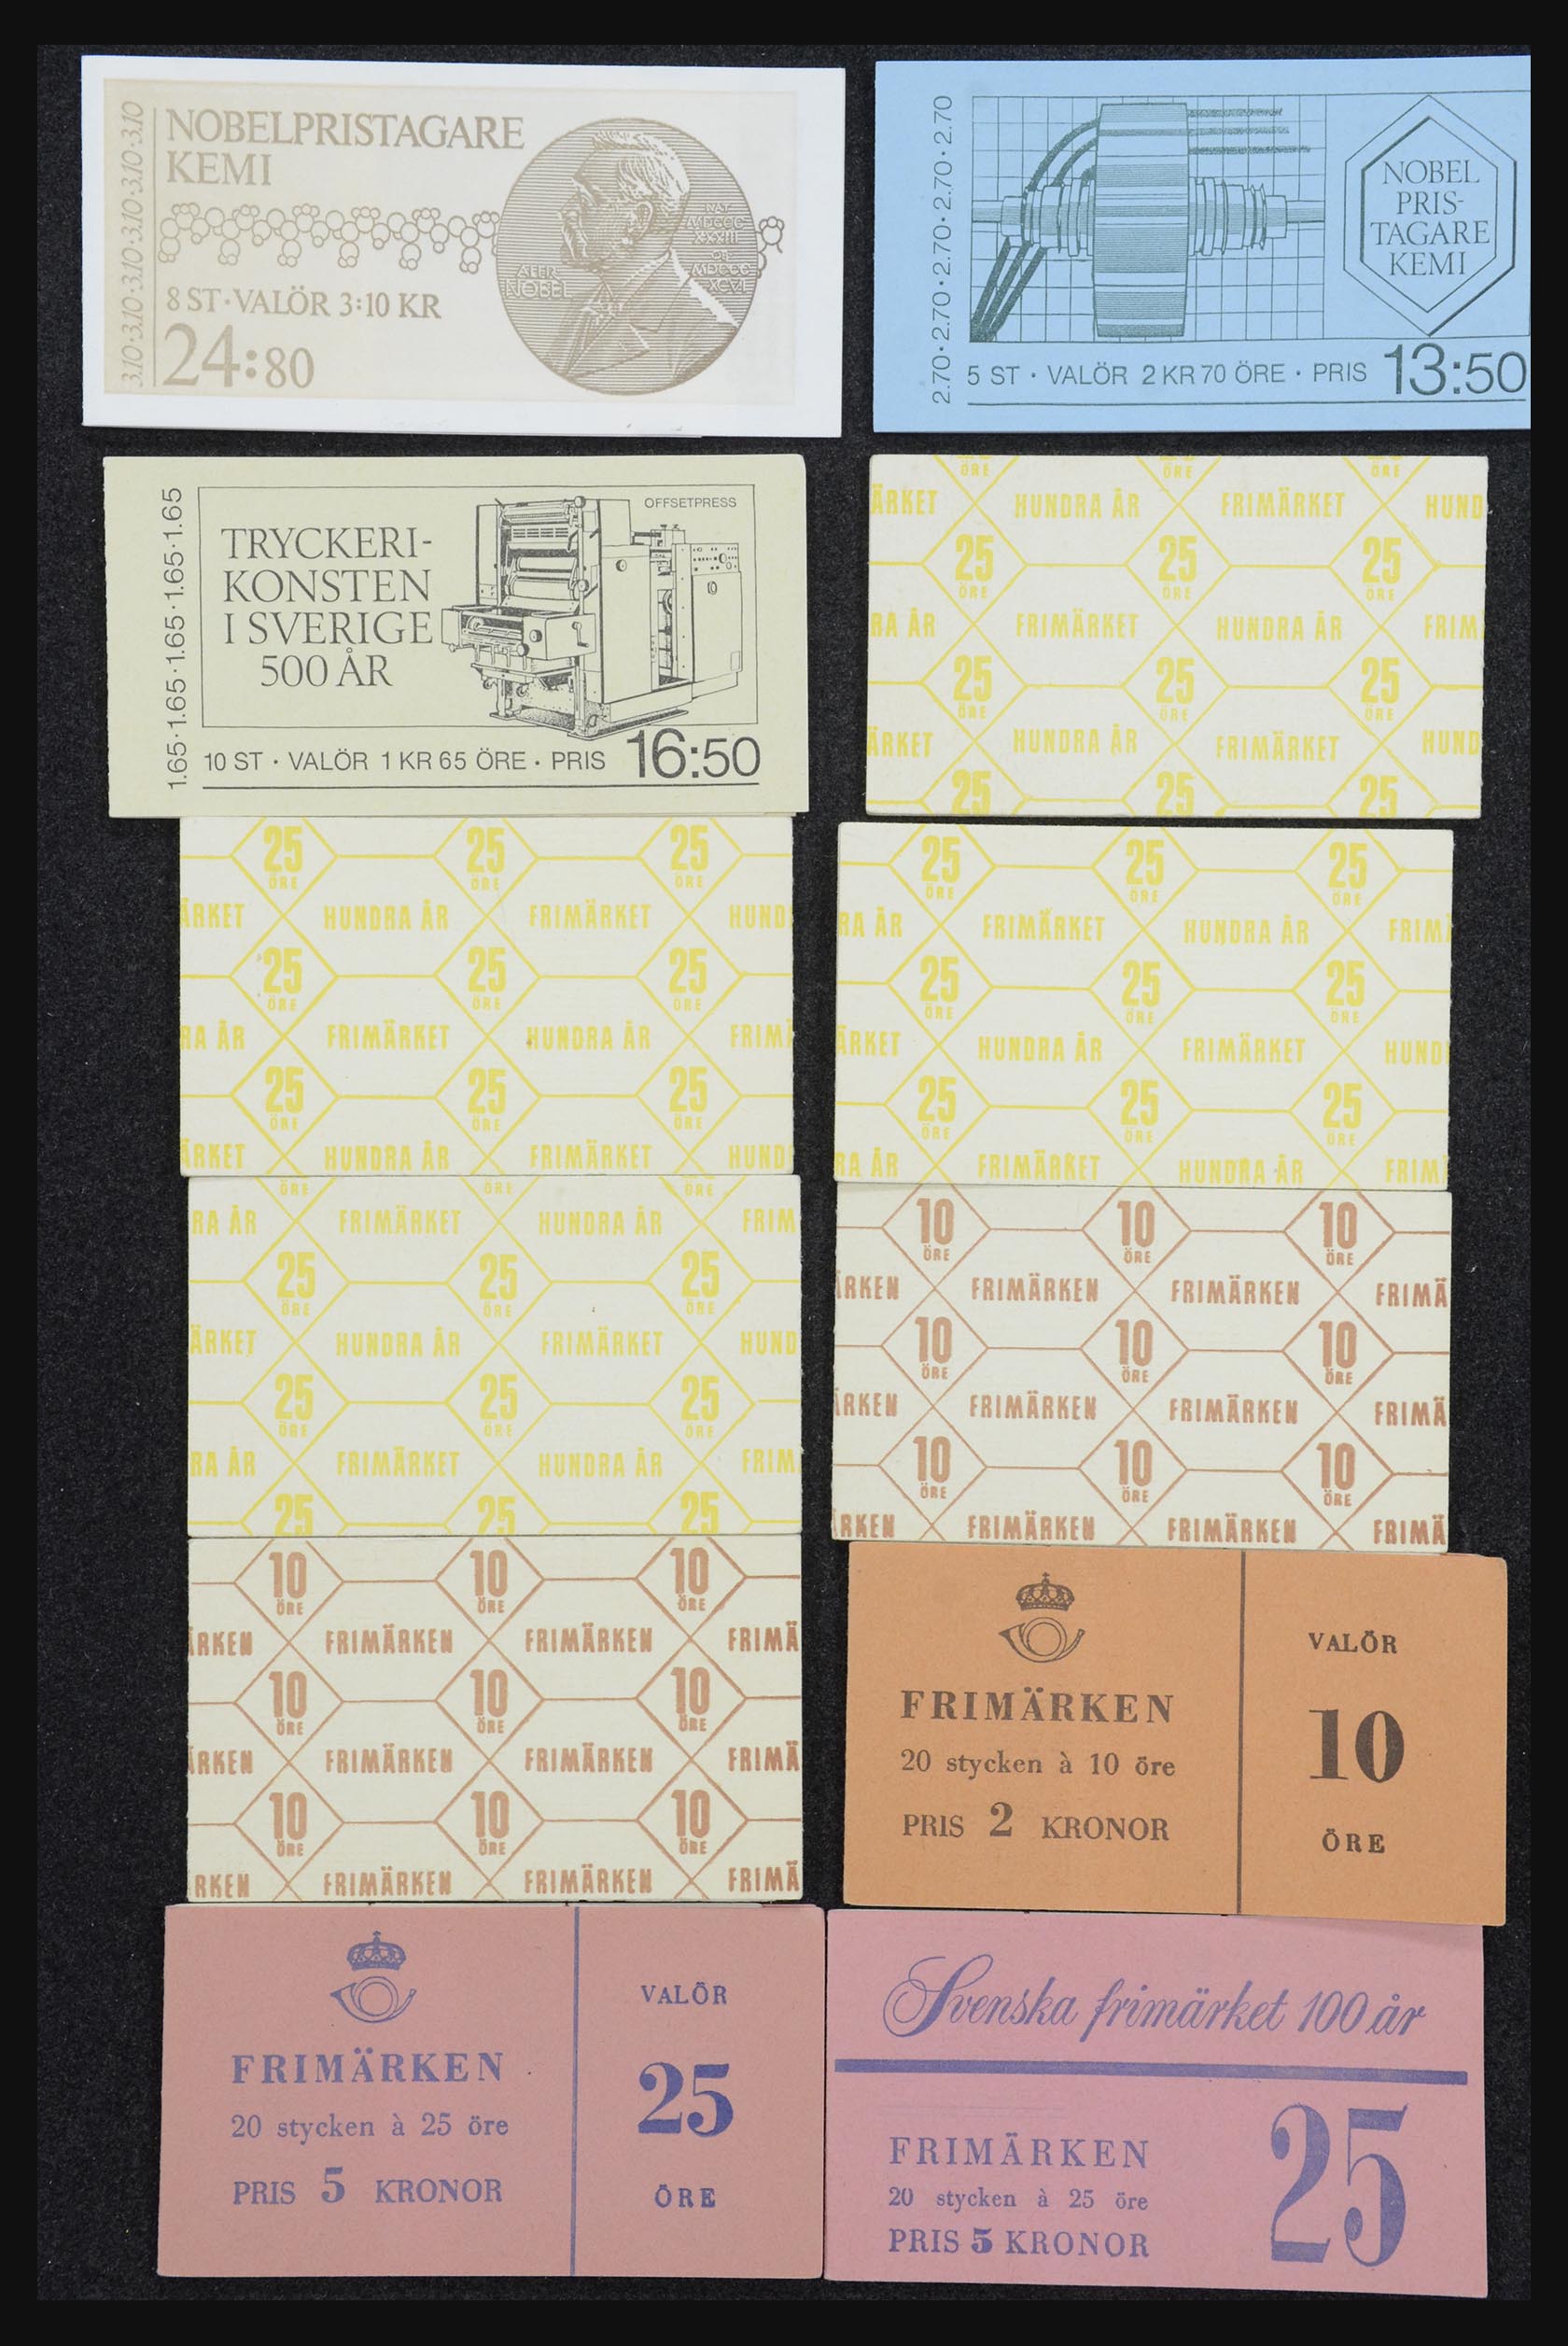 32026 047 - 32026 Sweden stampbooklets 1949-1990.